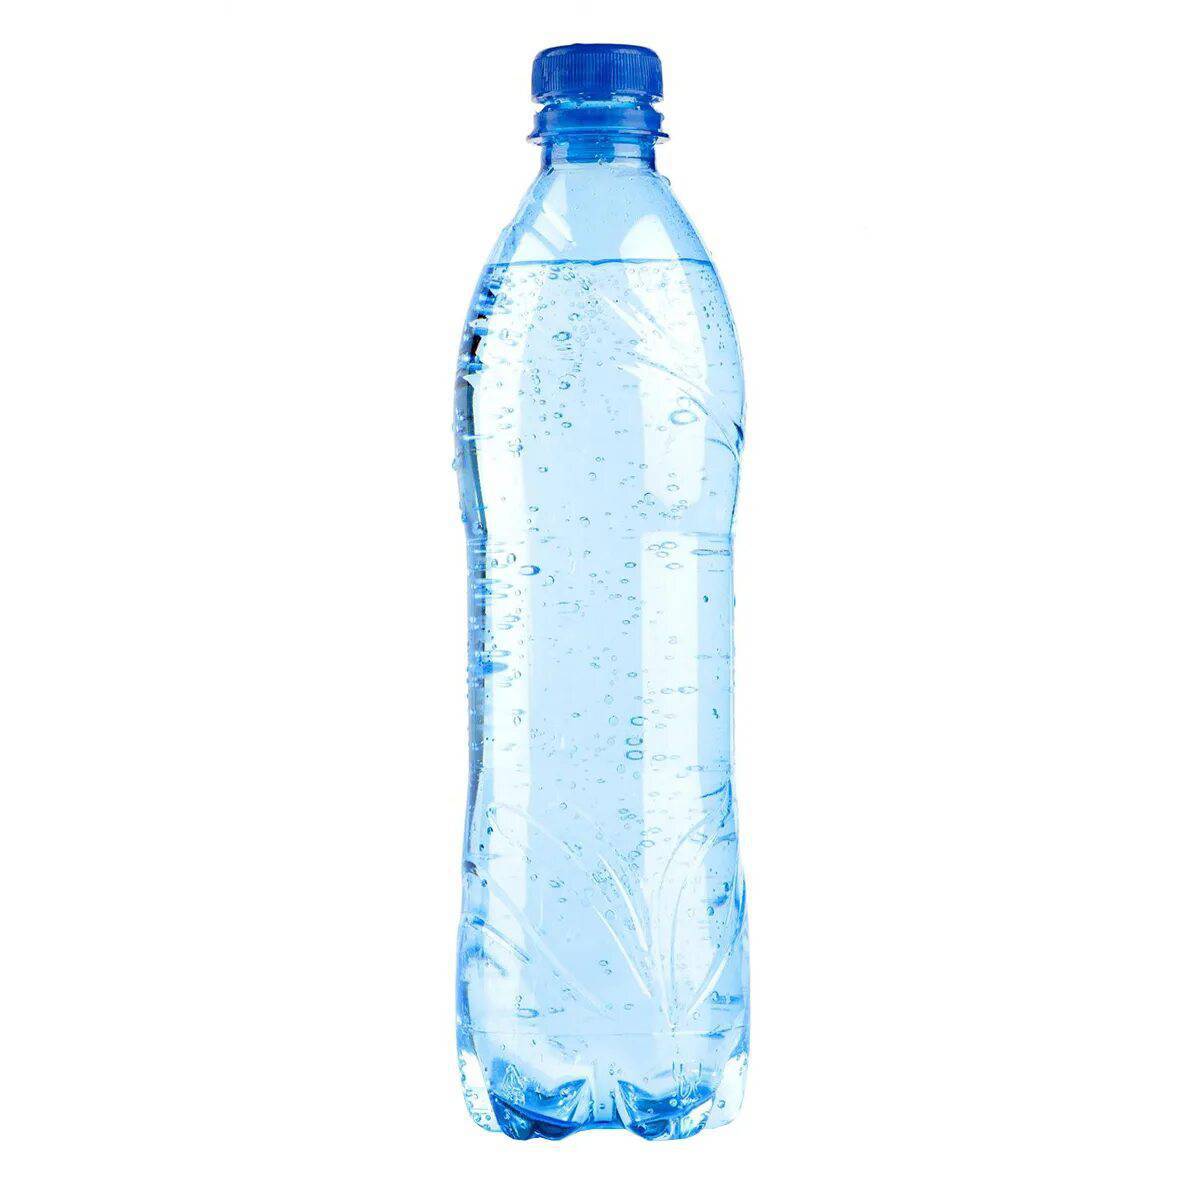 Бутылка воды 0 5 л. Бутылка для воды. Пластиковая бутылка для воды. Бутилированная минеральная вода. Бутылка воды без фона.